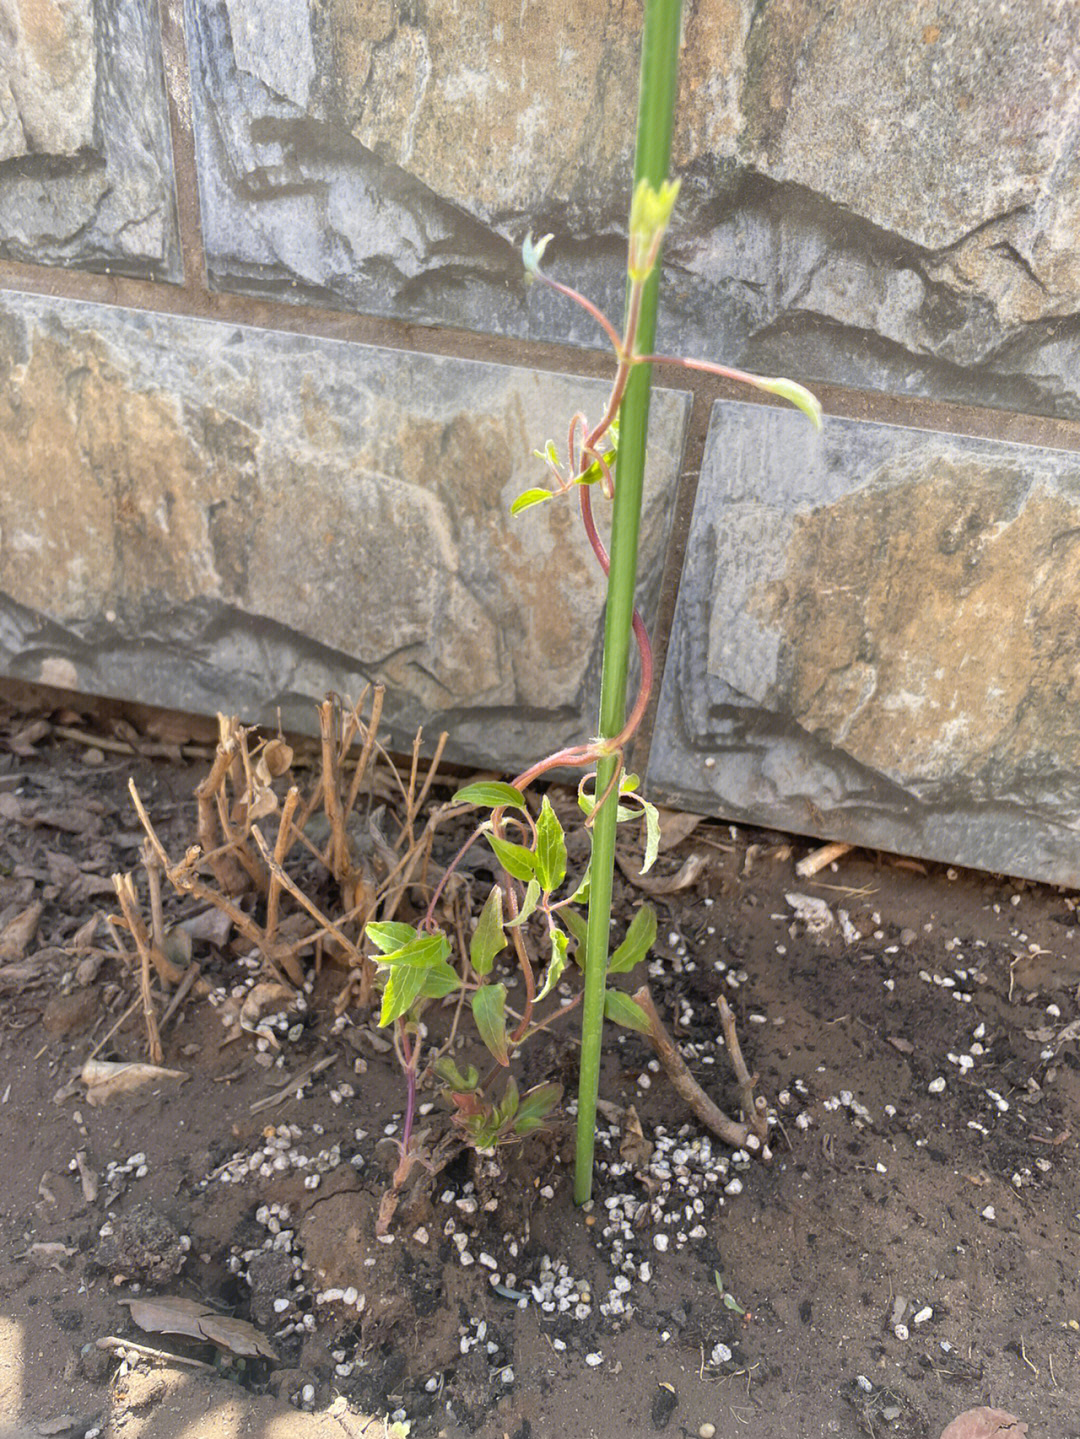 铁线莲一周前种下的活了月季3颗爬藤5颗灌木小苗成功过冬,都发芽了